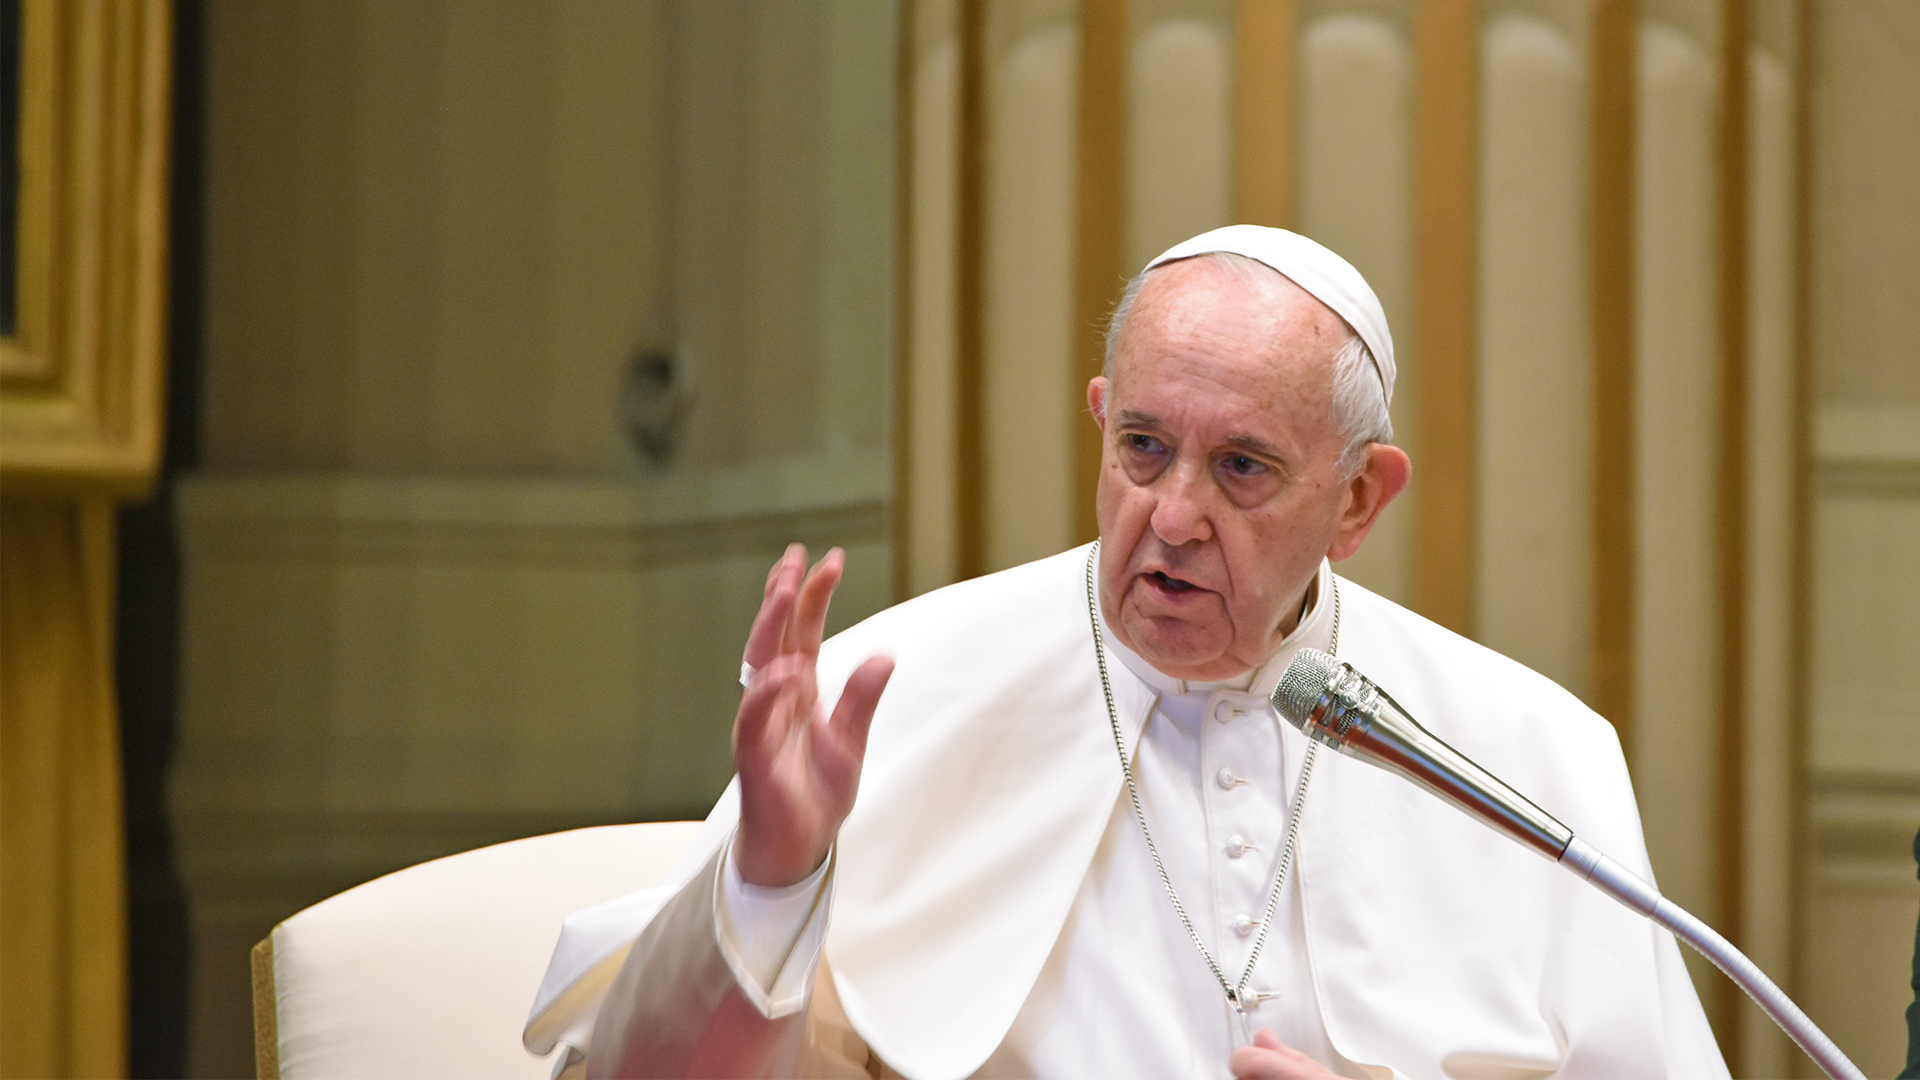 Le pape François a critiqué certains usages du mot "paix" | photo d'illustration © Grégory Roth